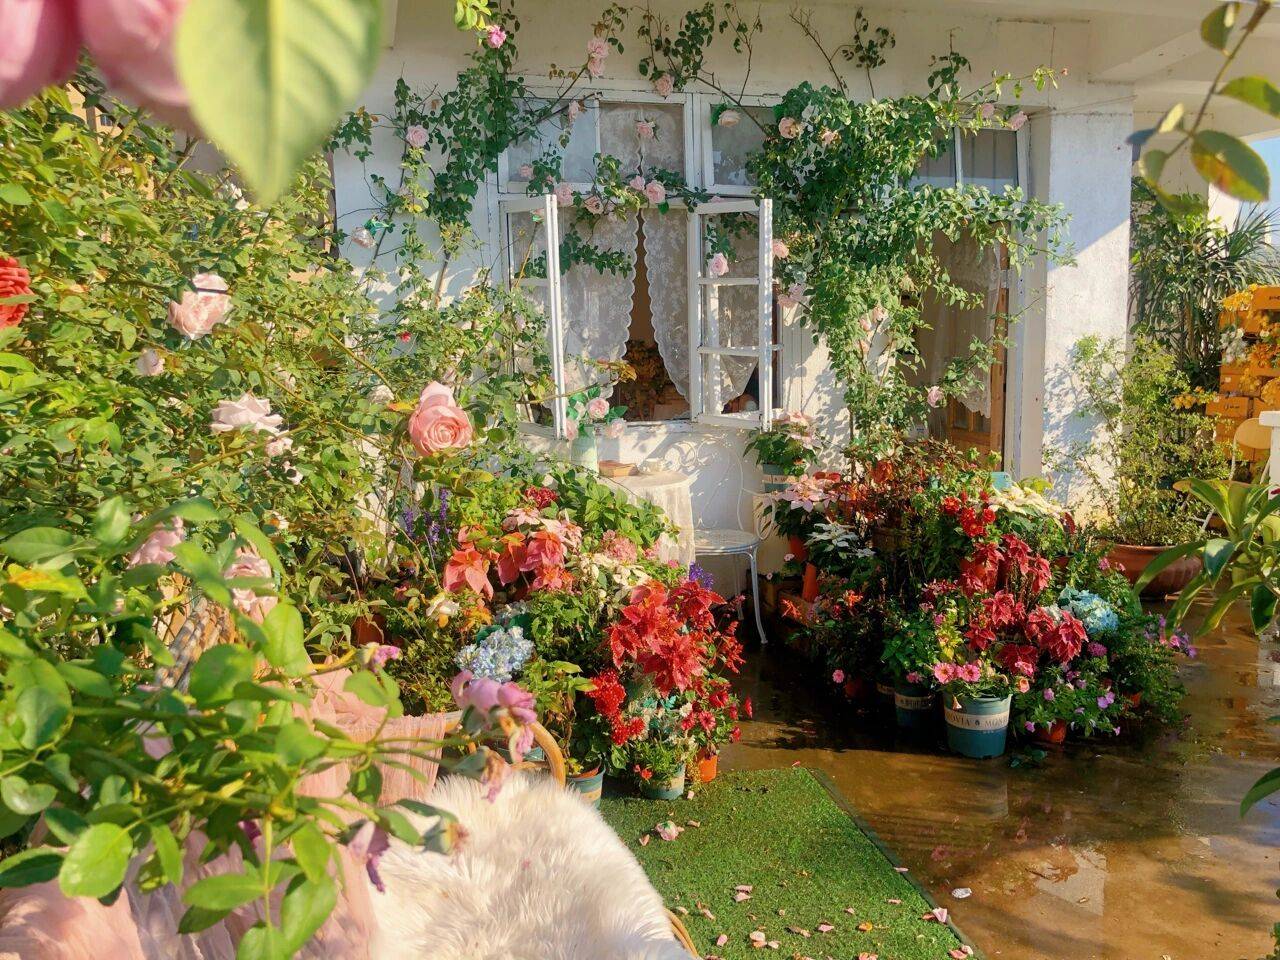 Đam mê với việc trồng hoa, cô gái 27 tuổi thuê nhà trên sân thượng để tạo ra khu vườn đẹp như tranh vẽ- Ảnh 1.